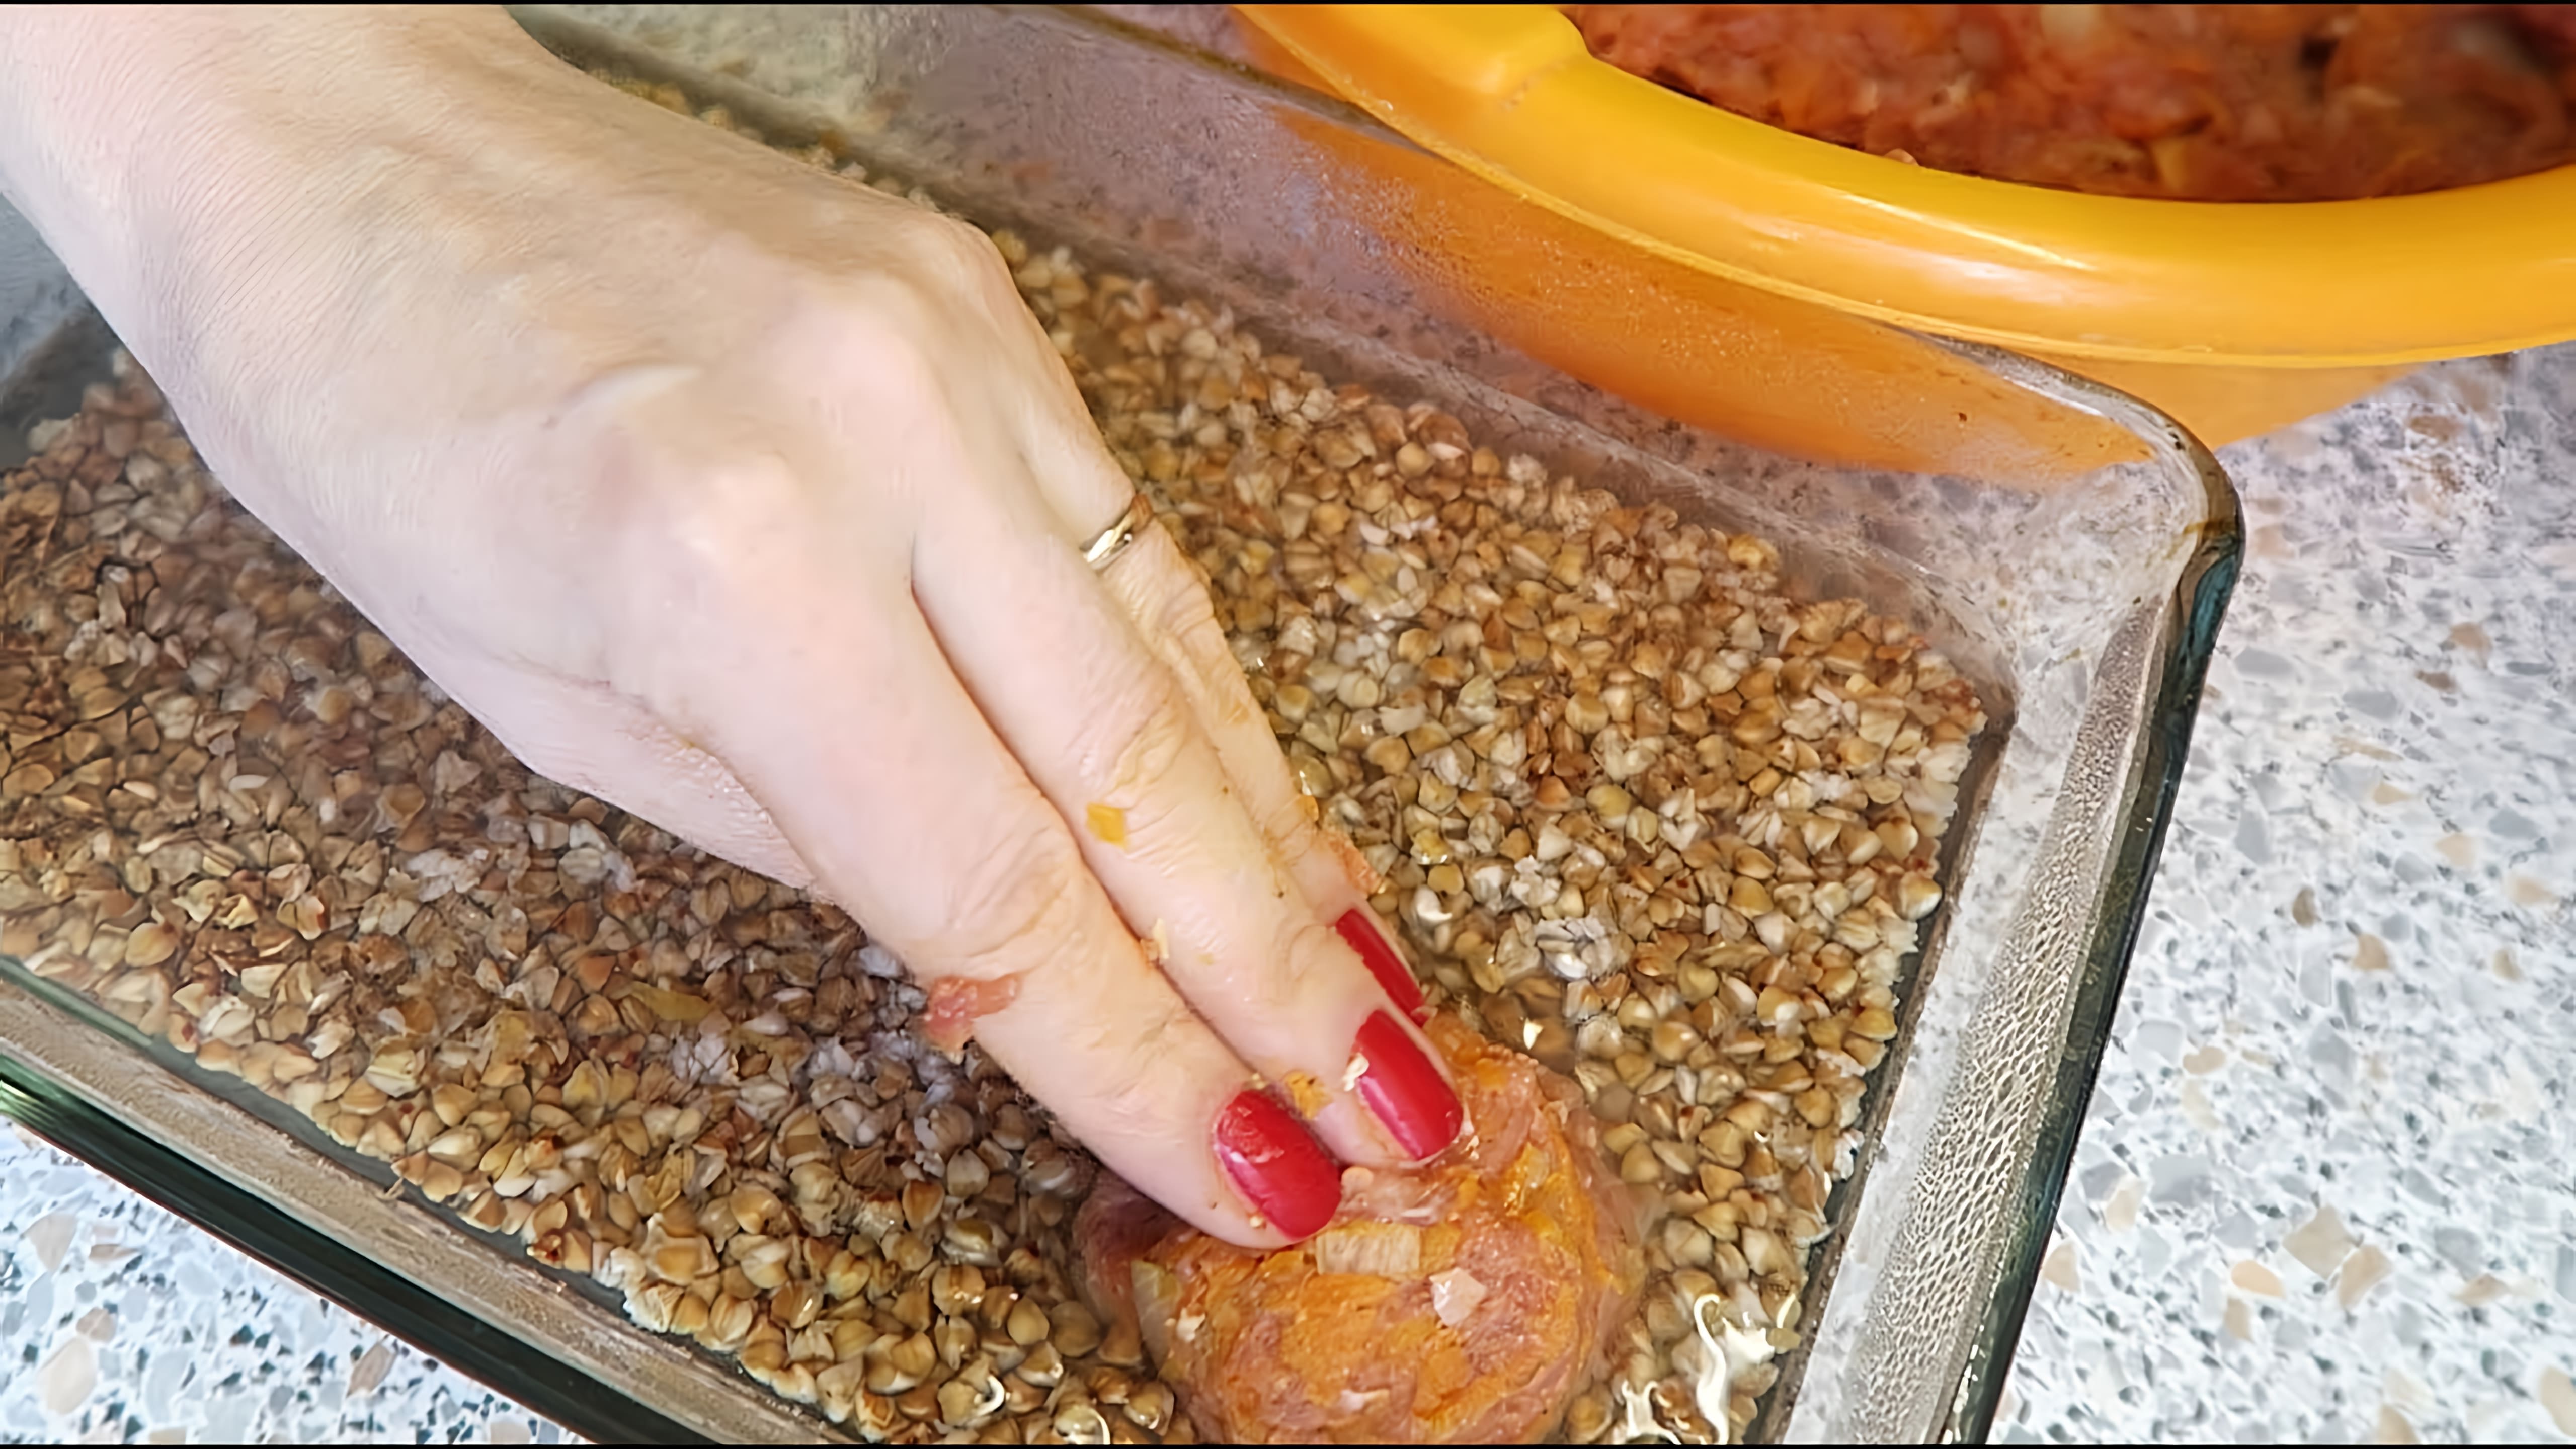 В этом видео демонстрируется процесс приготовления обеда из мяса с гречкой и овощами